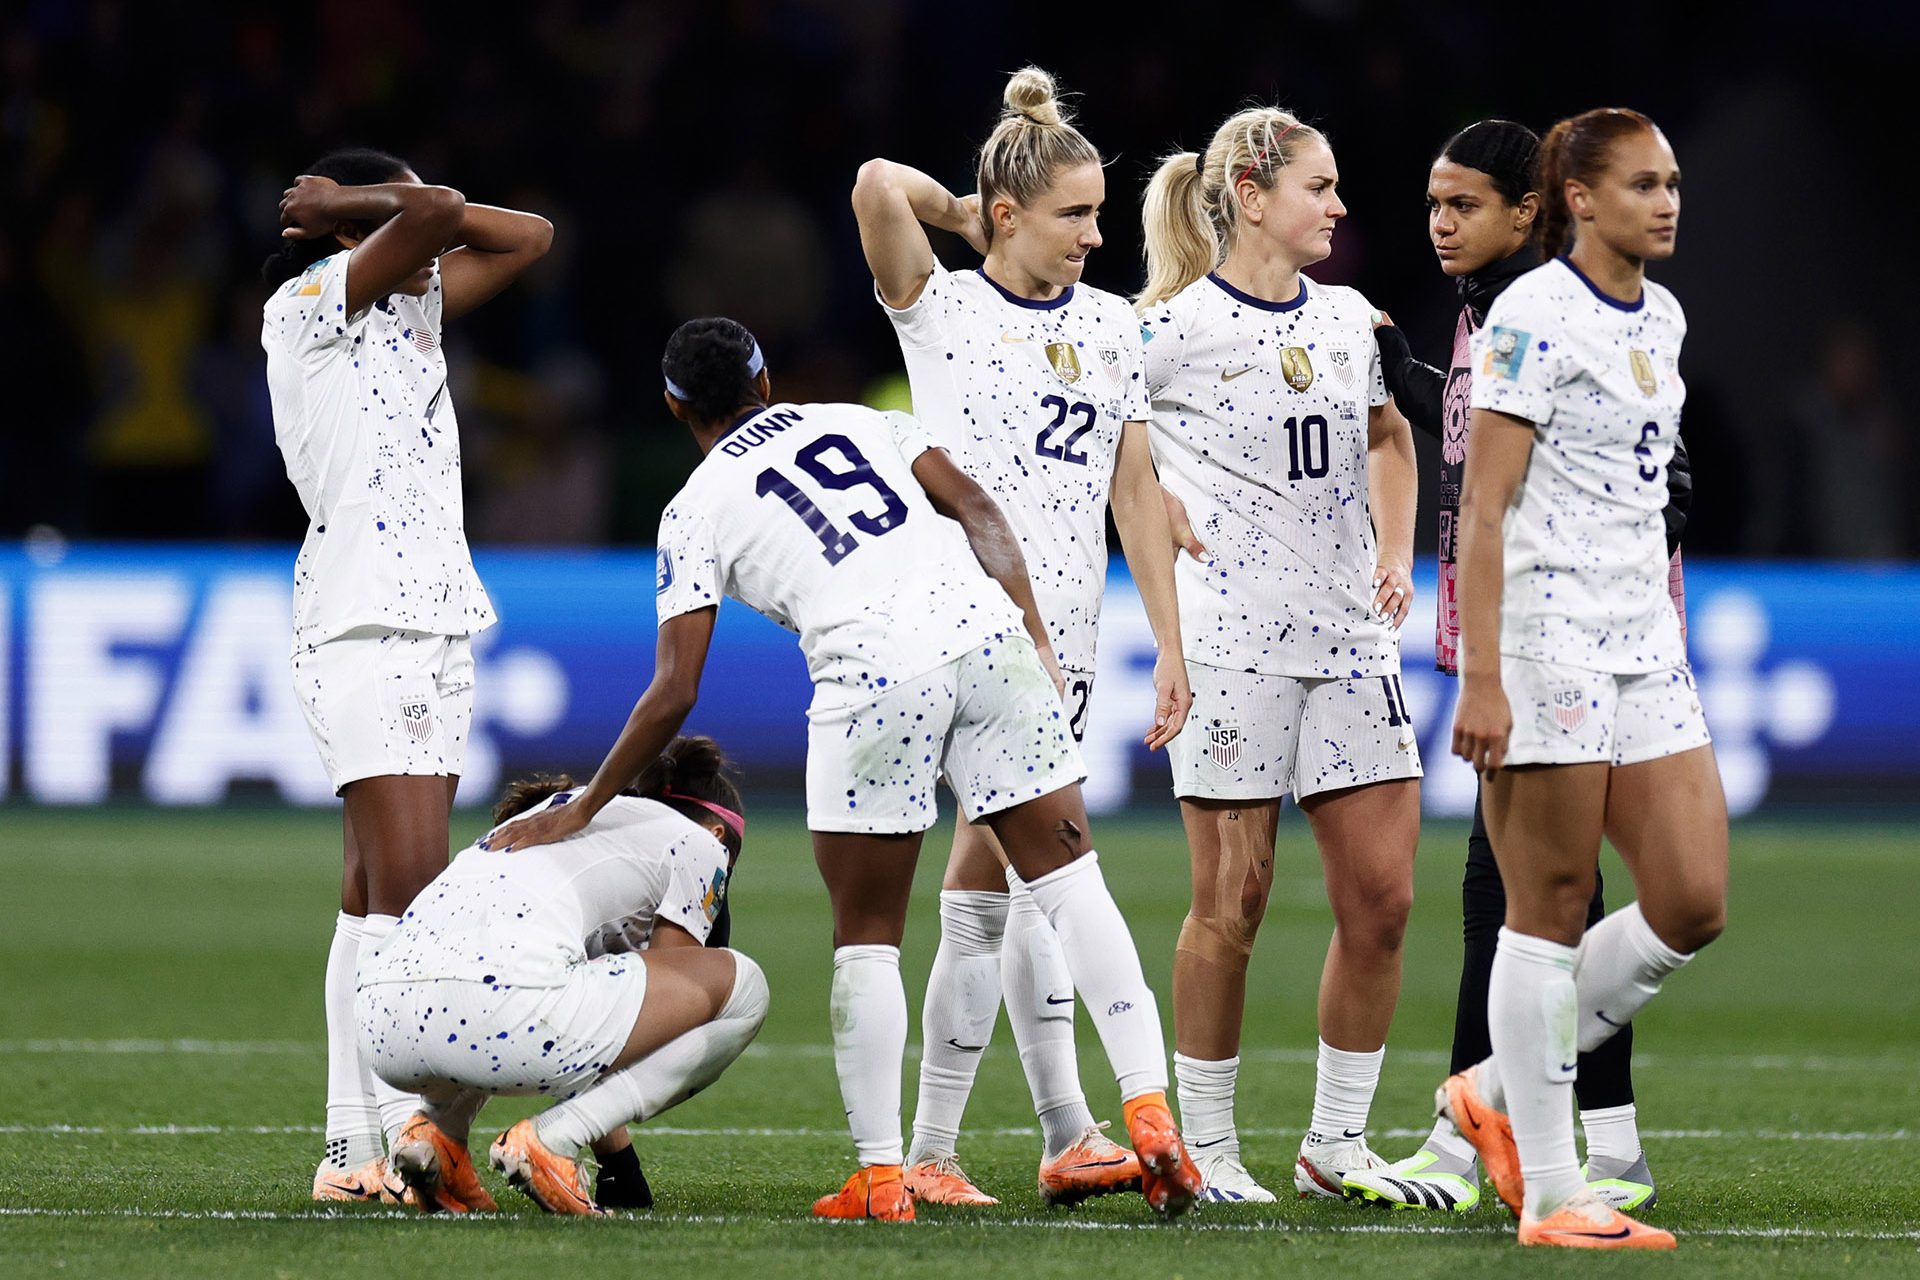 Voetbal: de VS uitgeschakeld in de achtste finales op het WK voor vrouwen